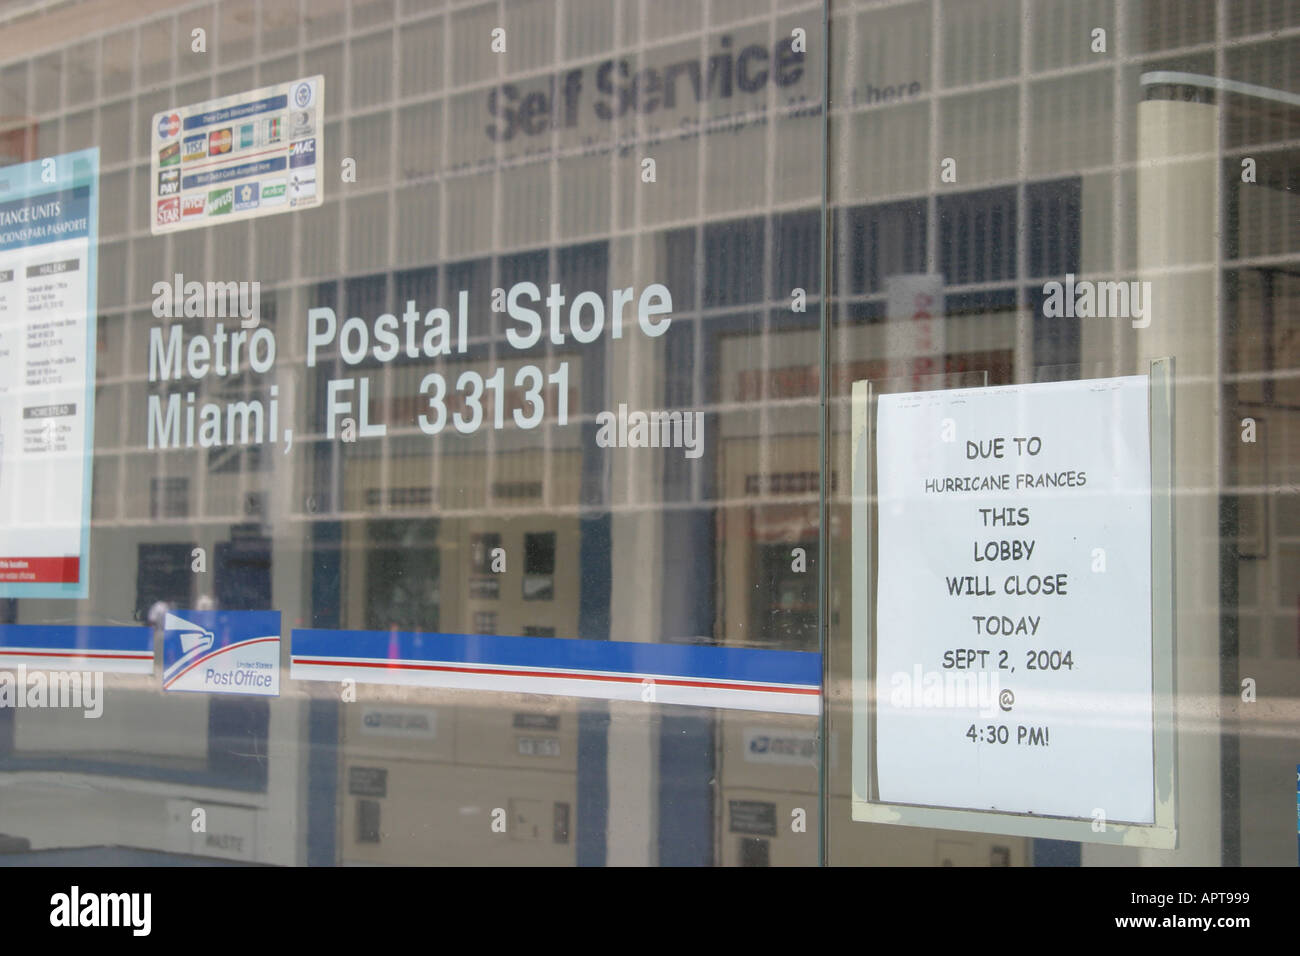 Miami Florida,chiuso US Post Office,mail,consegna,pacchi,francobolli,servizio postale,posta,consegna,francobolli,buste,pacchetti,informazioni,messaggio,pubblicità Foto Stock